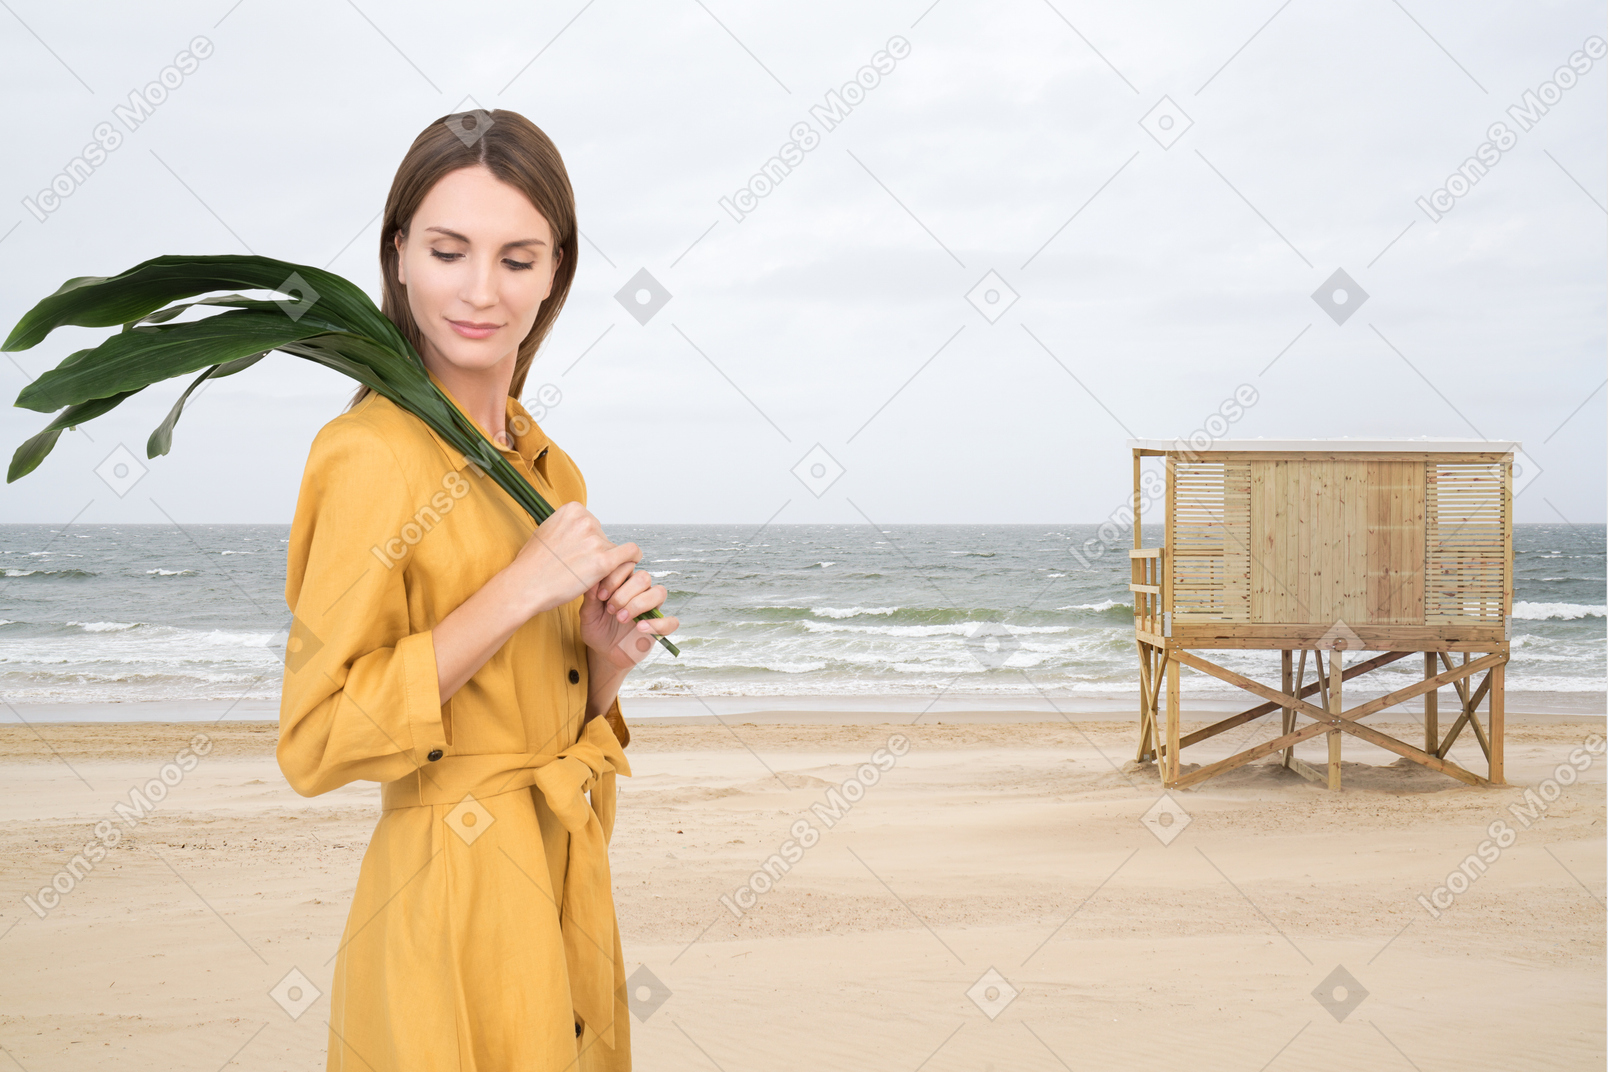 Frau mit grünen blättern, die am strand spaziert